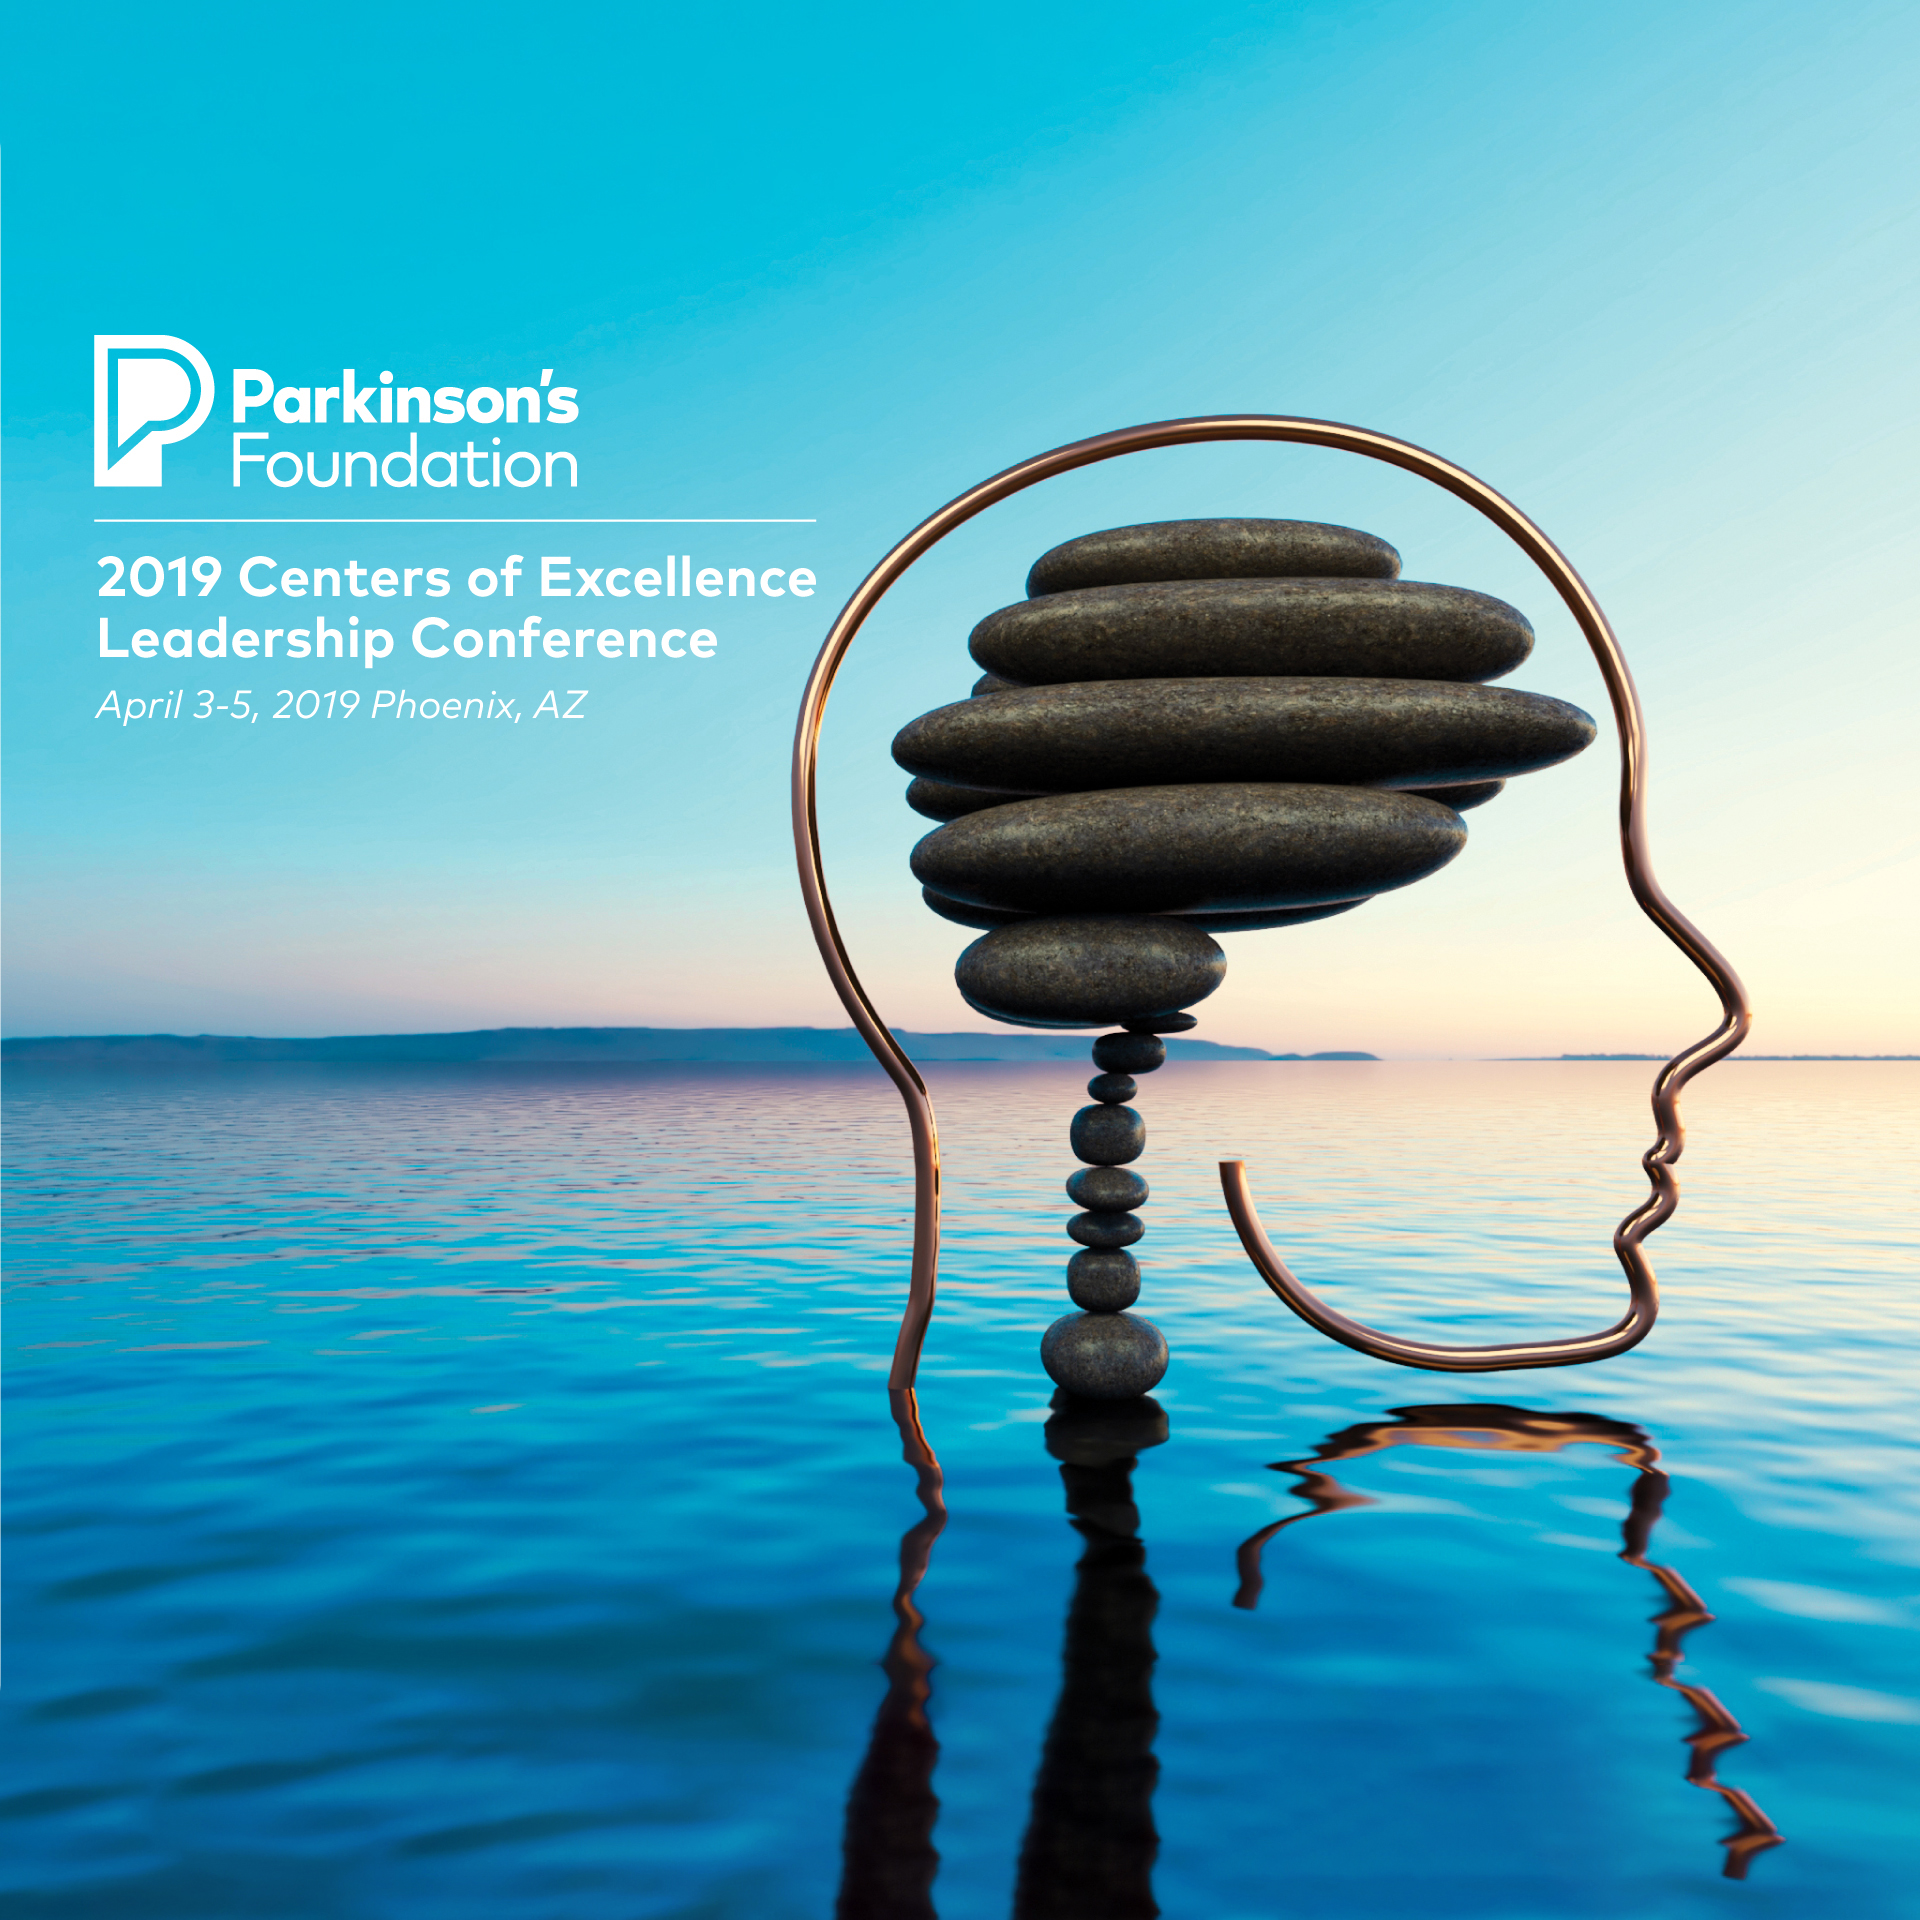 Imagen Visual para el evento CLC 2019 del Parkinson's Foundation